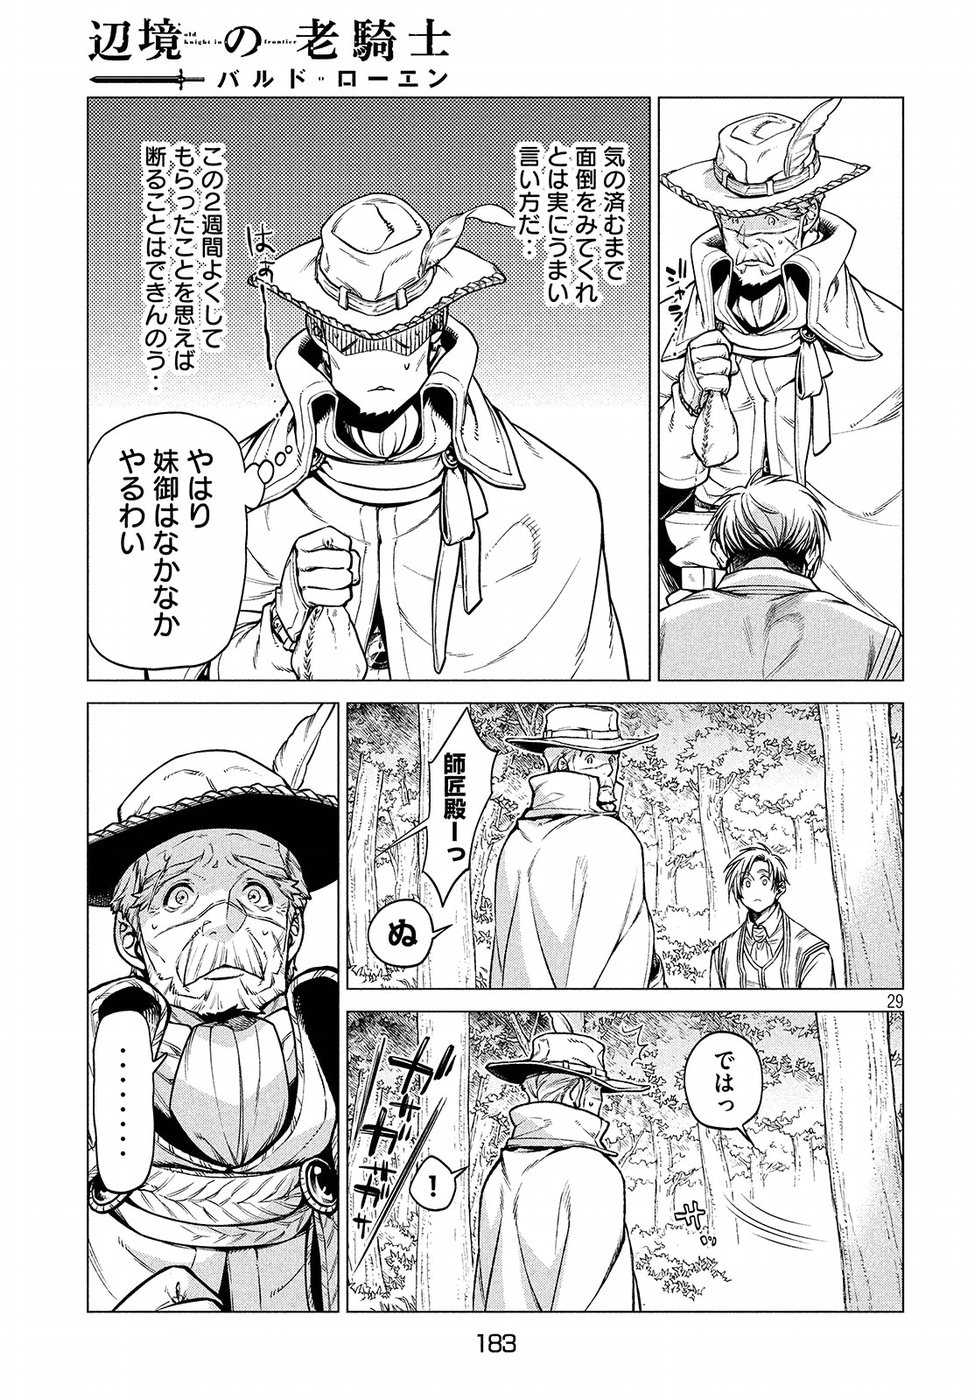 Henkyou no Roukishi – Bard Loen - Chapter 22 - Page 29